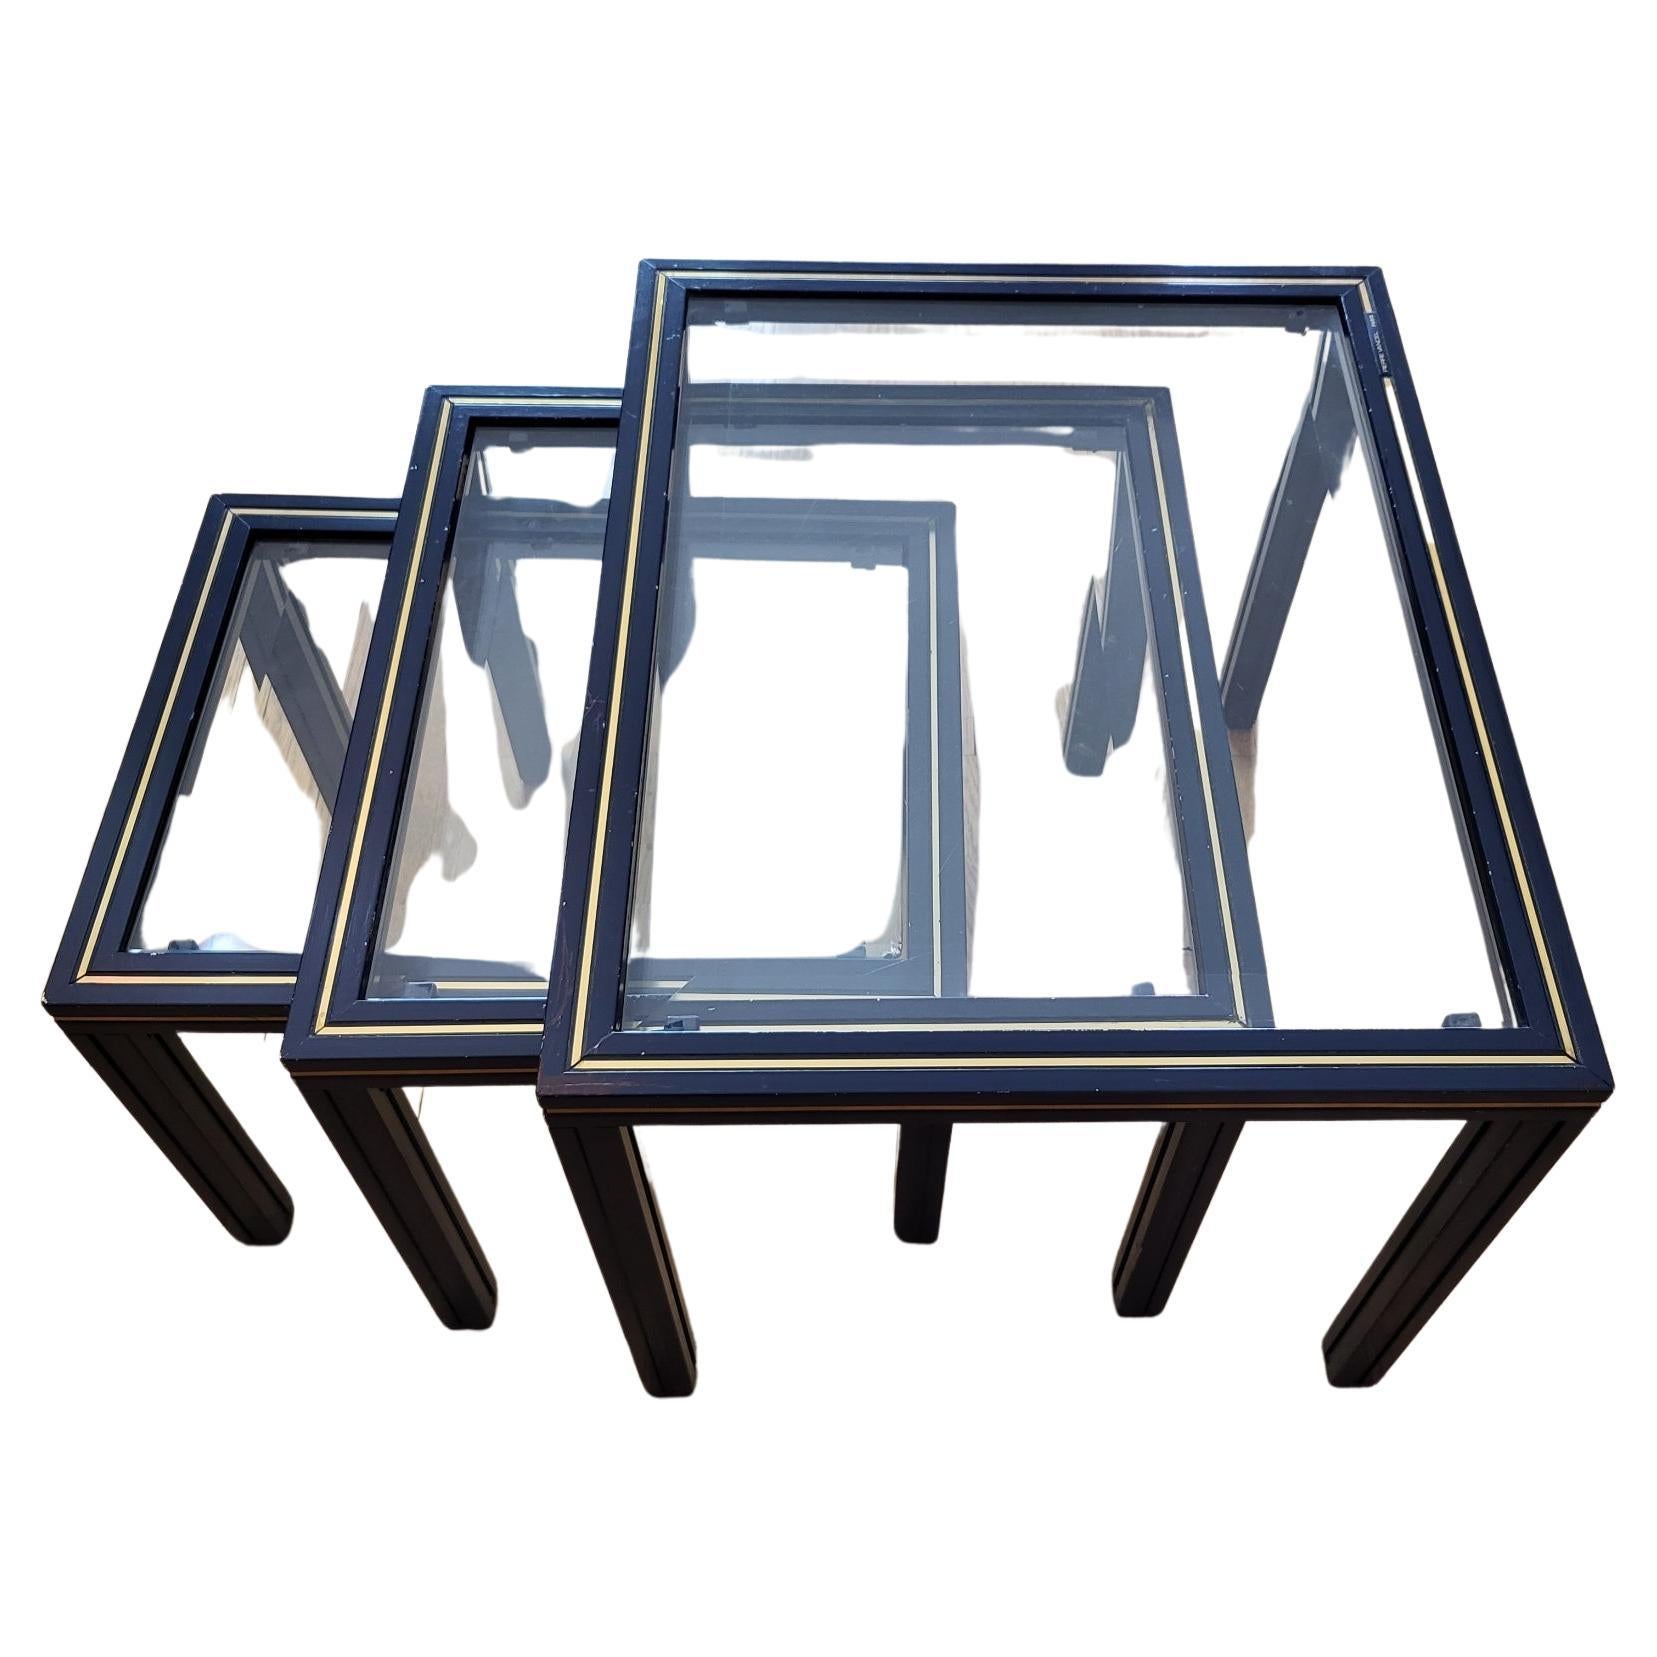 Tables gigognes lot de 3, du designer Pierre Vandel des années 1970, en métal laqué bleu avec un liseret doré et plateau en verre.
Elle ont des marques d'usures apparente visible sur les photos .
Seule la petite table a un coin légèrement